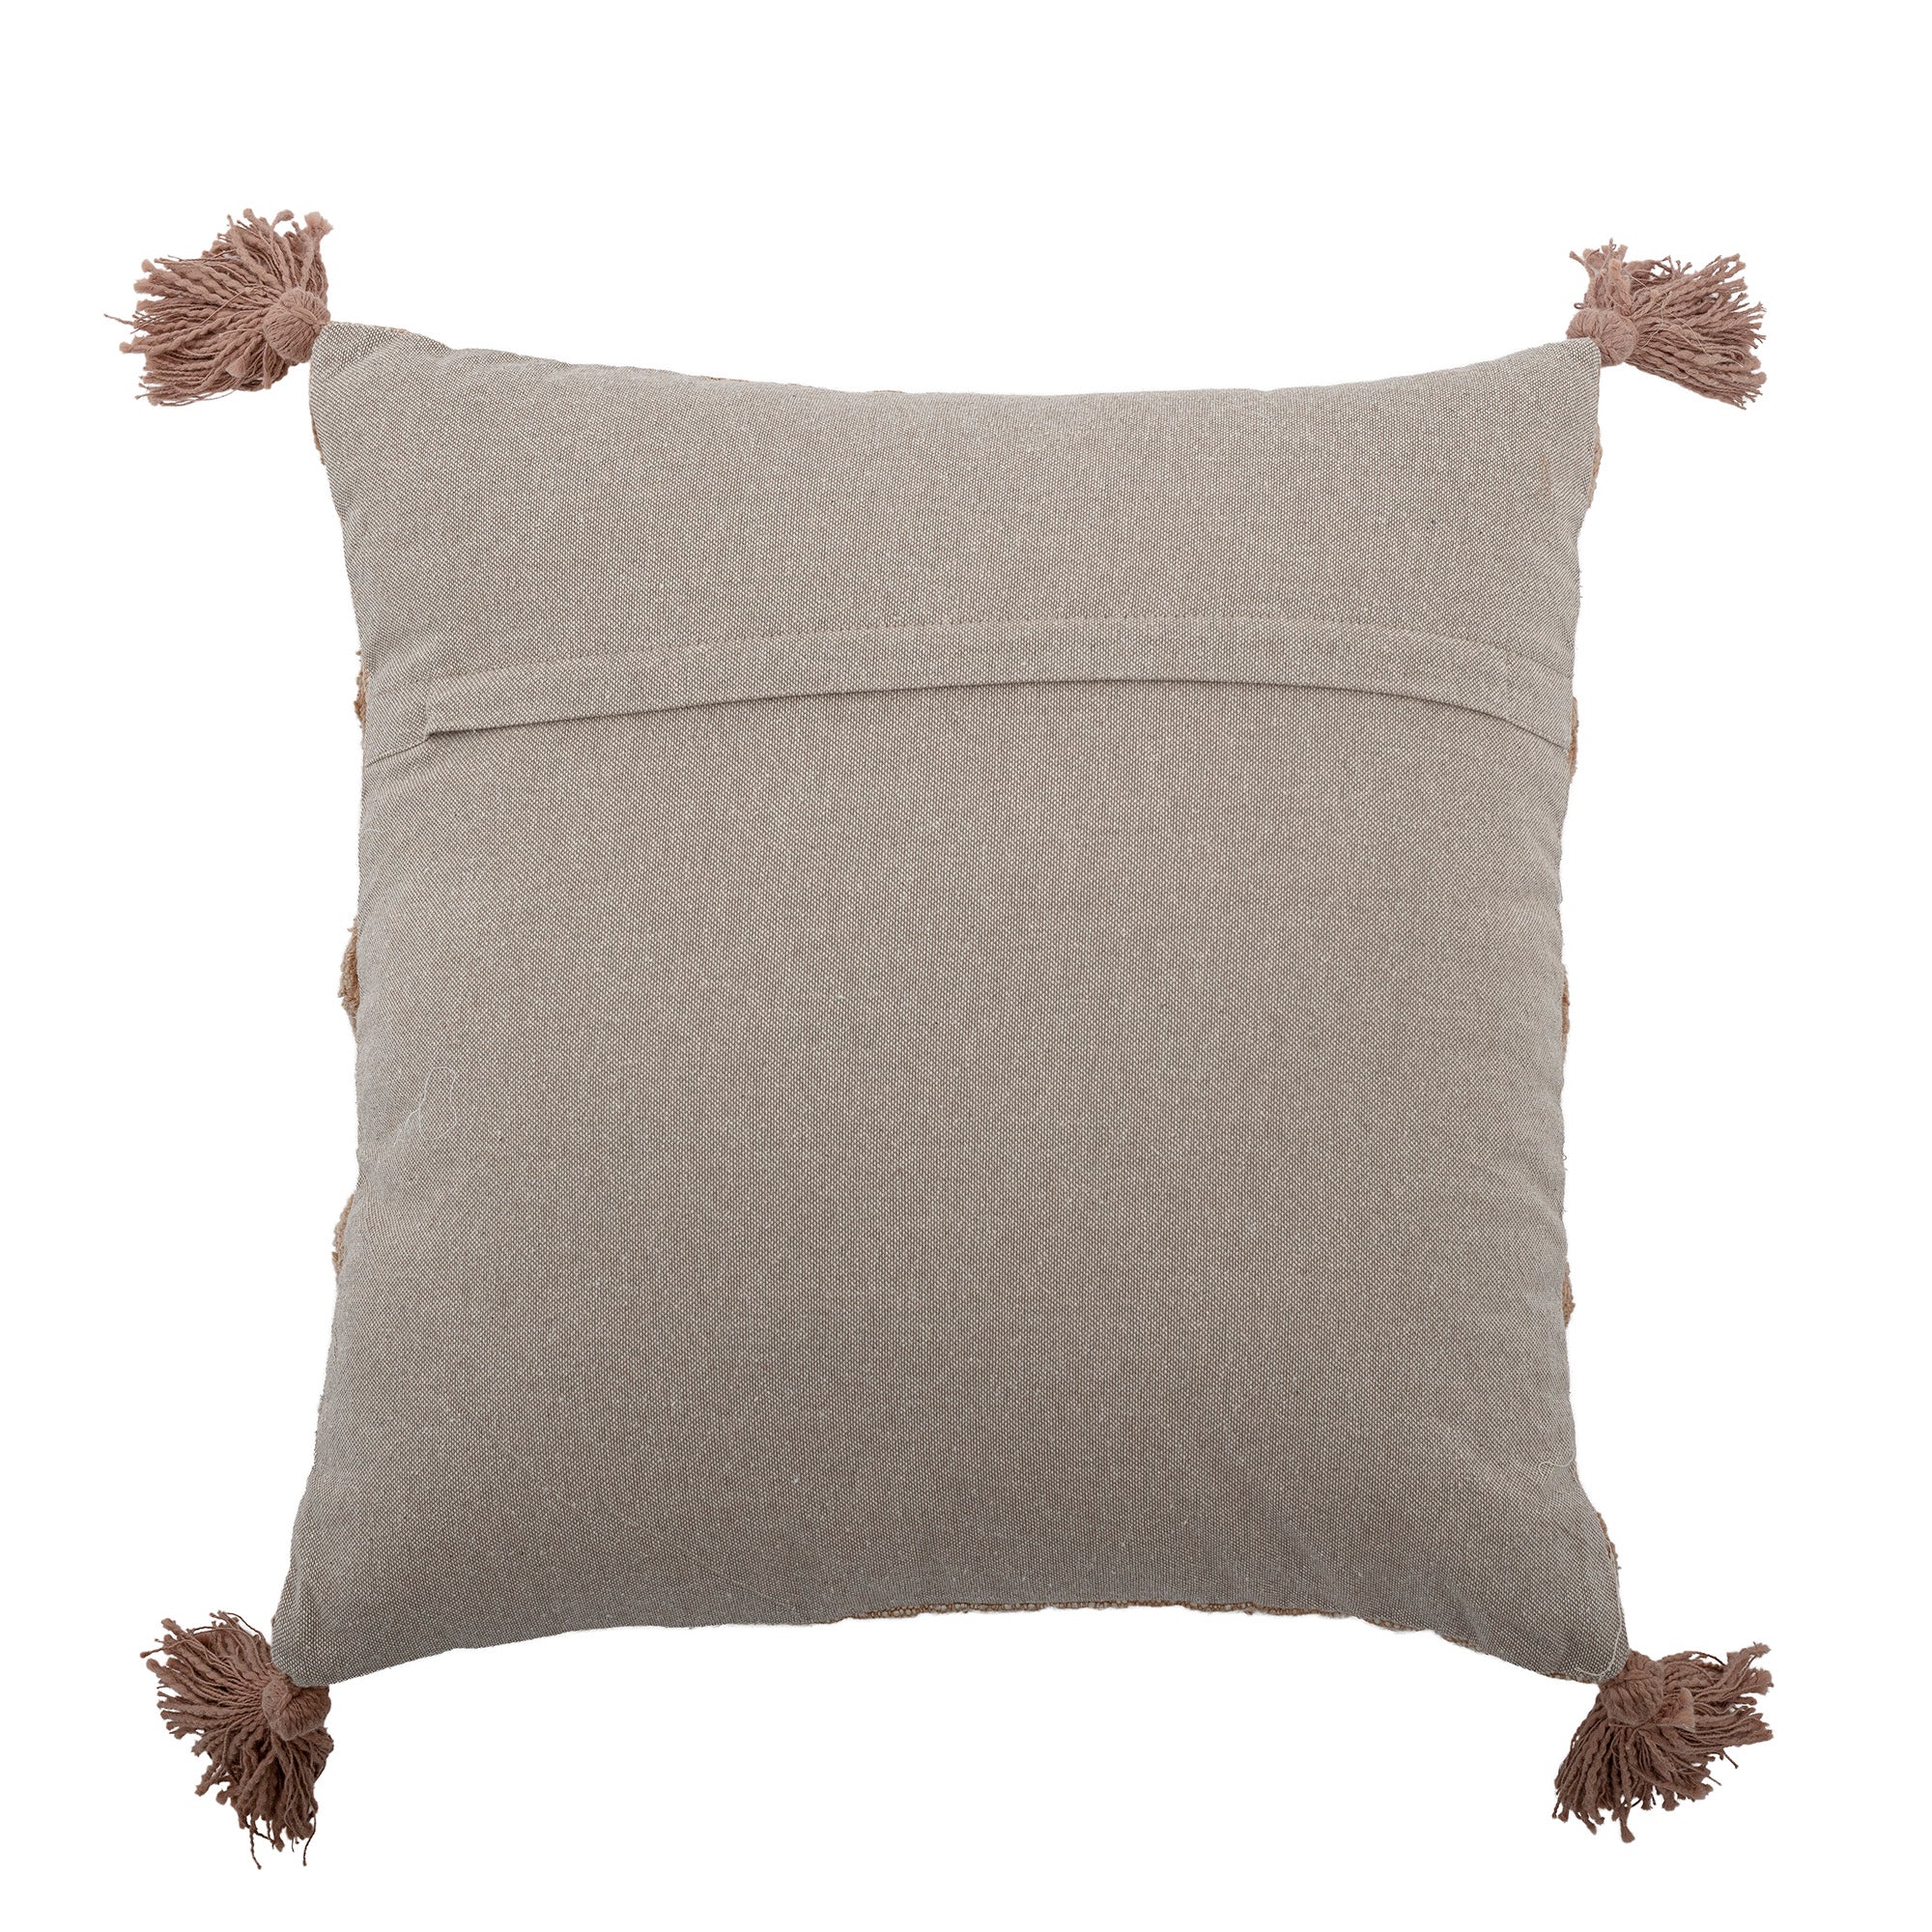 Binette cushion